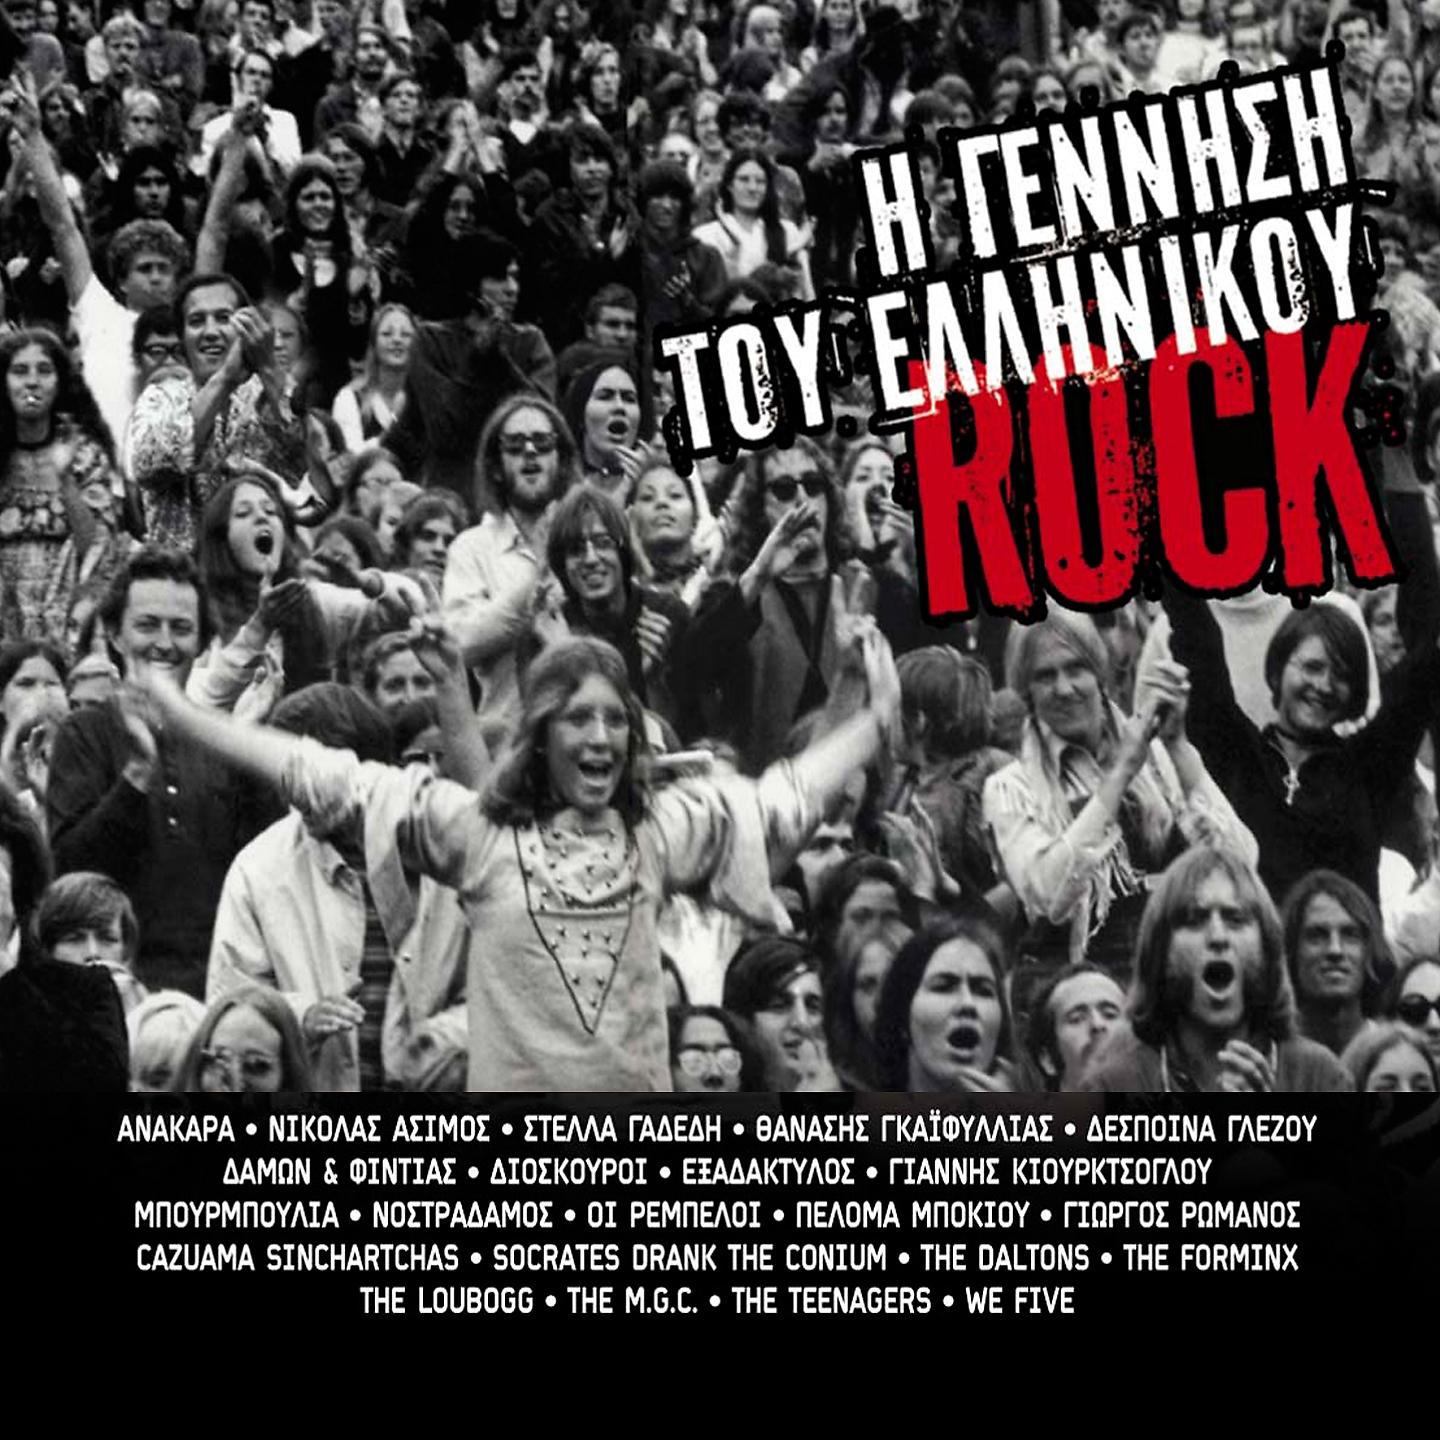 Постер альбома I Gennisi Tou Ellinikou Rock